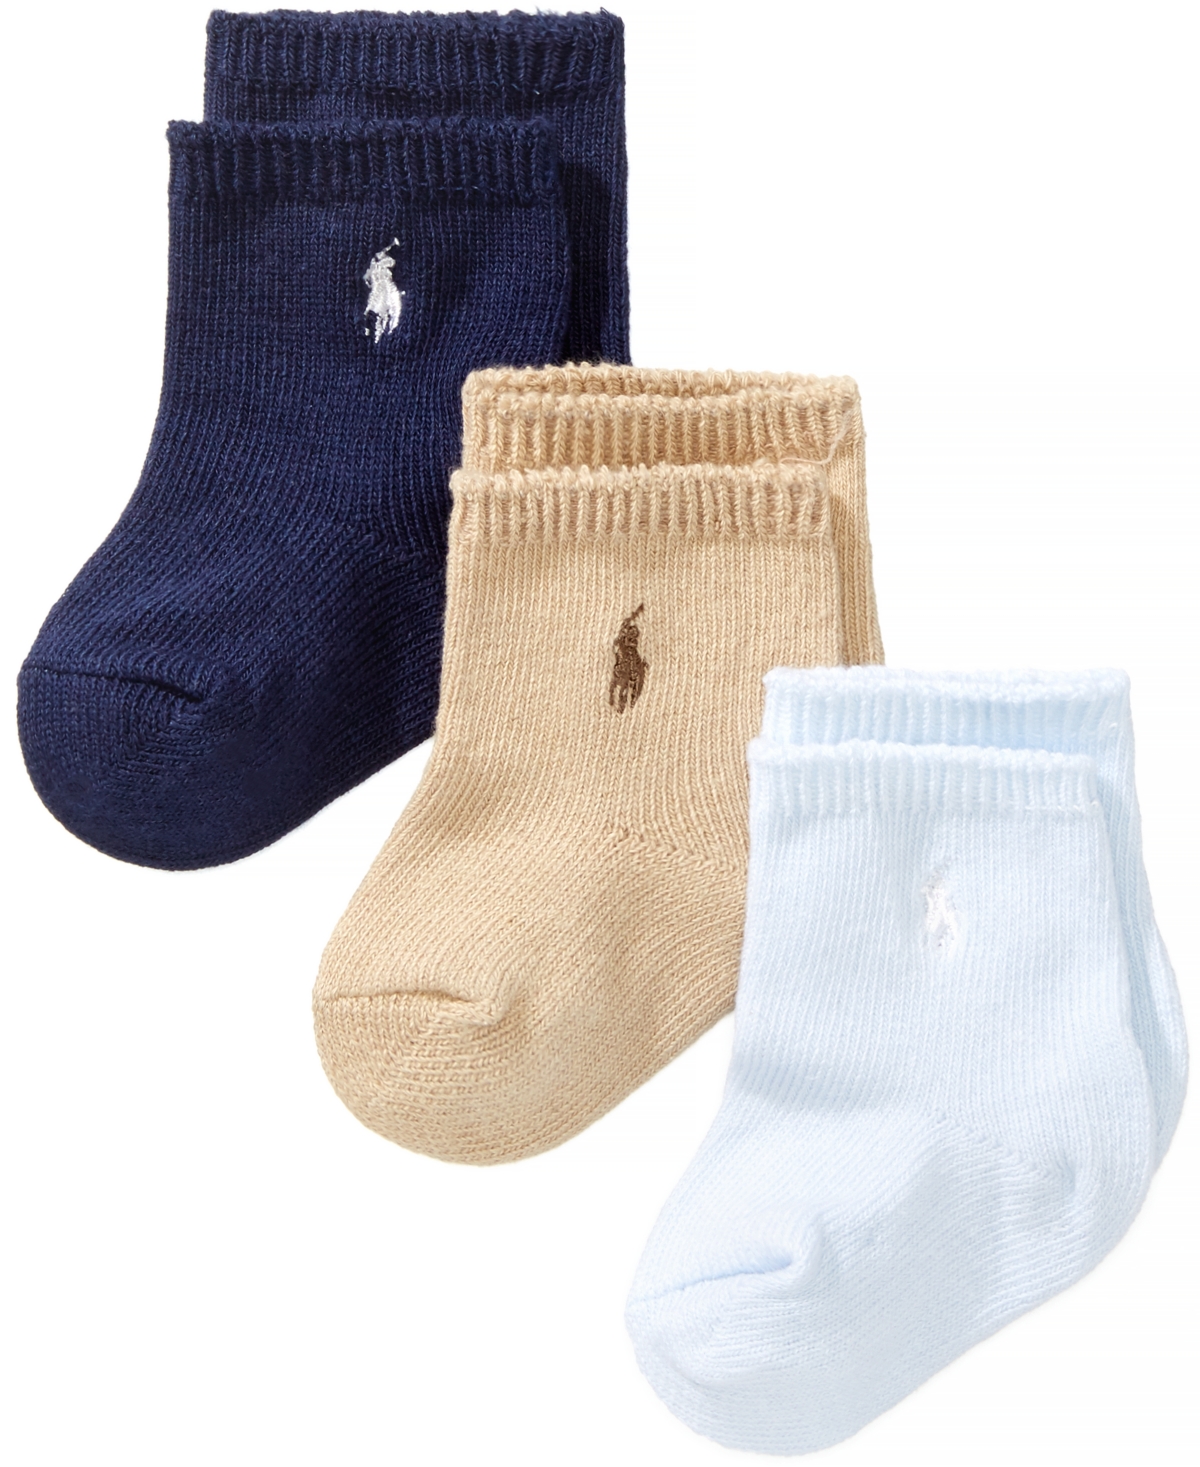 Polo Ralph Lauren Ralph Lauren Baby Boys Embroidered Logo Crew Socks, Pack Of 3 In Navy,khaki,blue